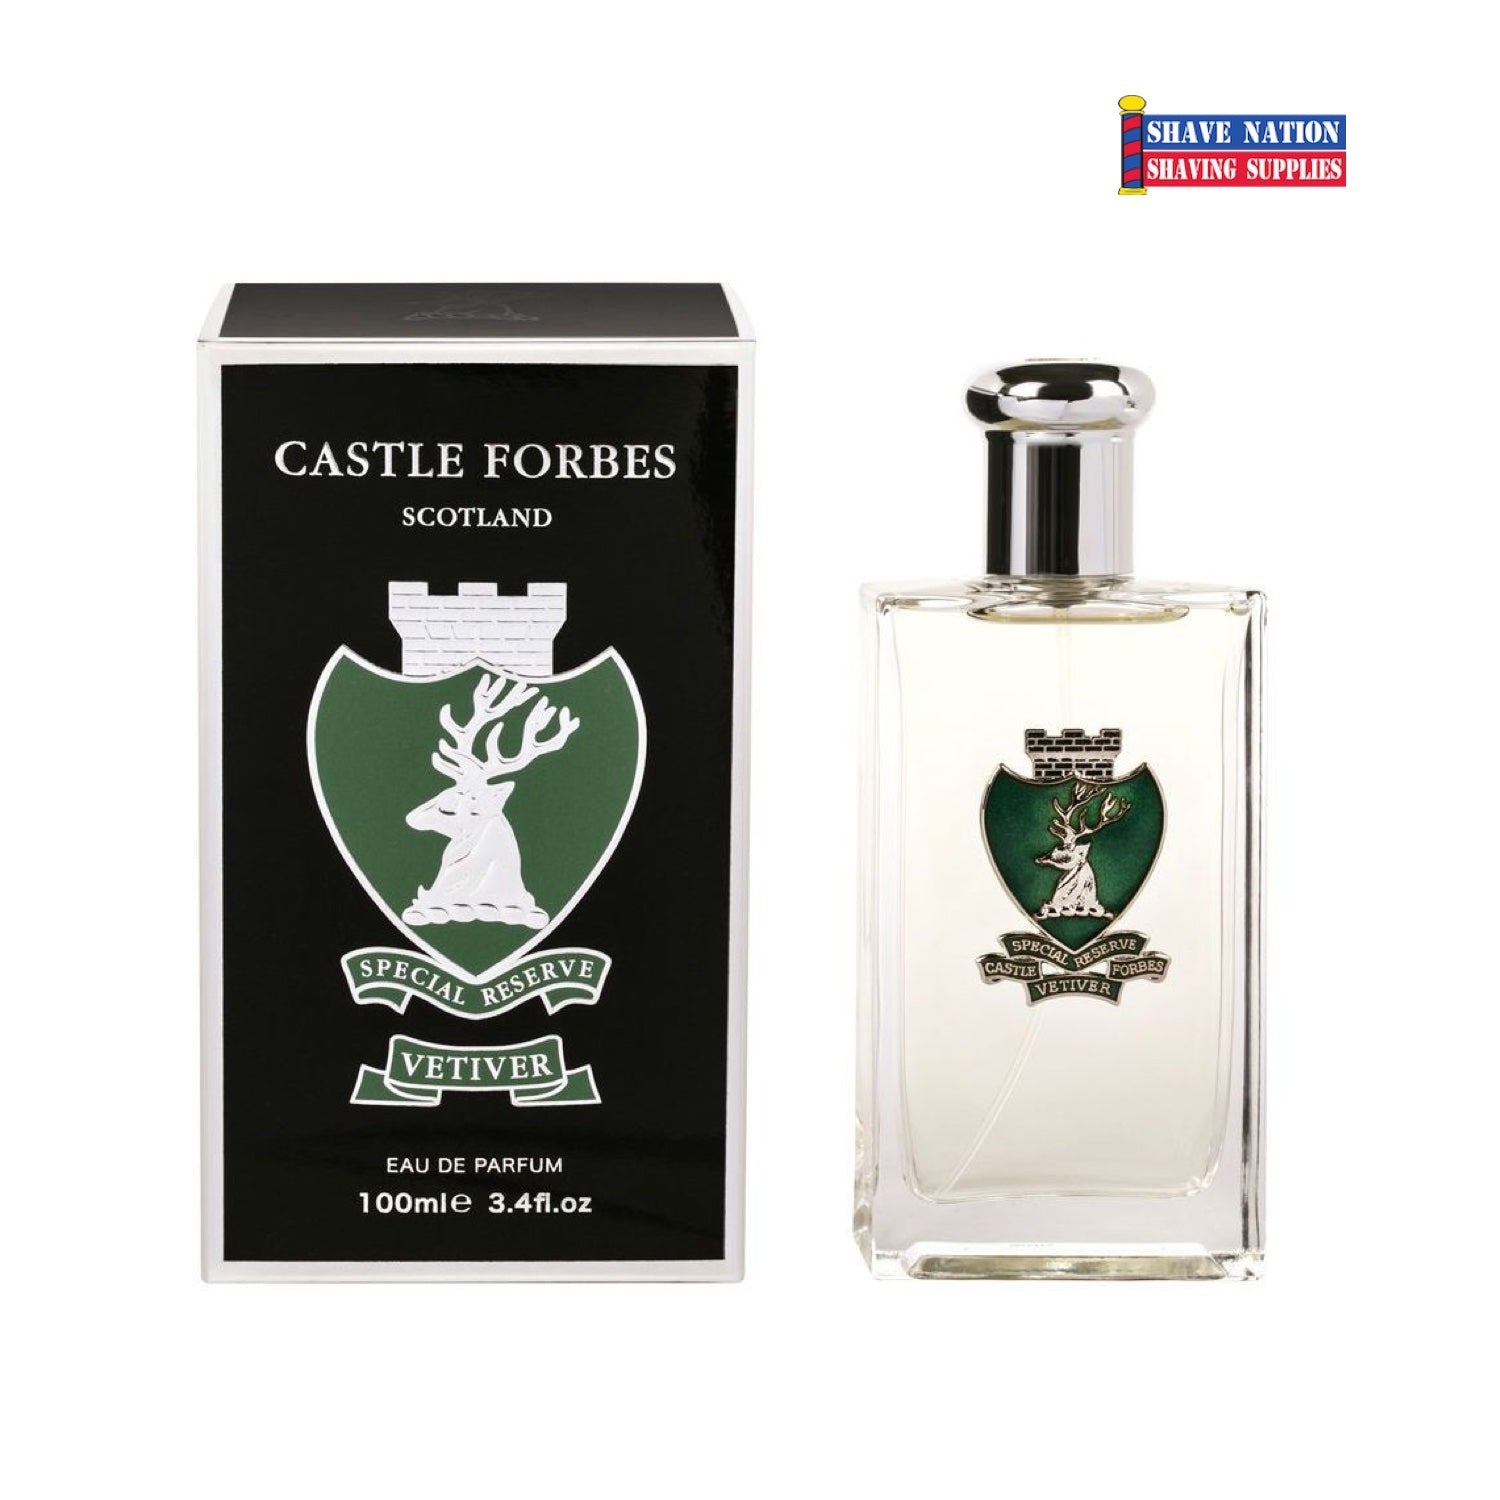 Castle Forbes VETIVER Eau De Parfum Aftershave